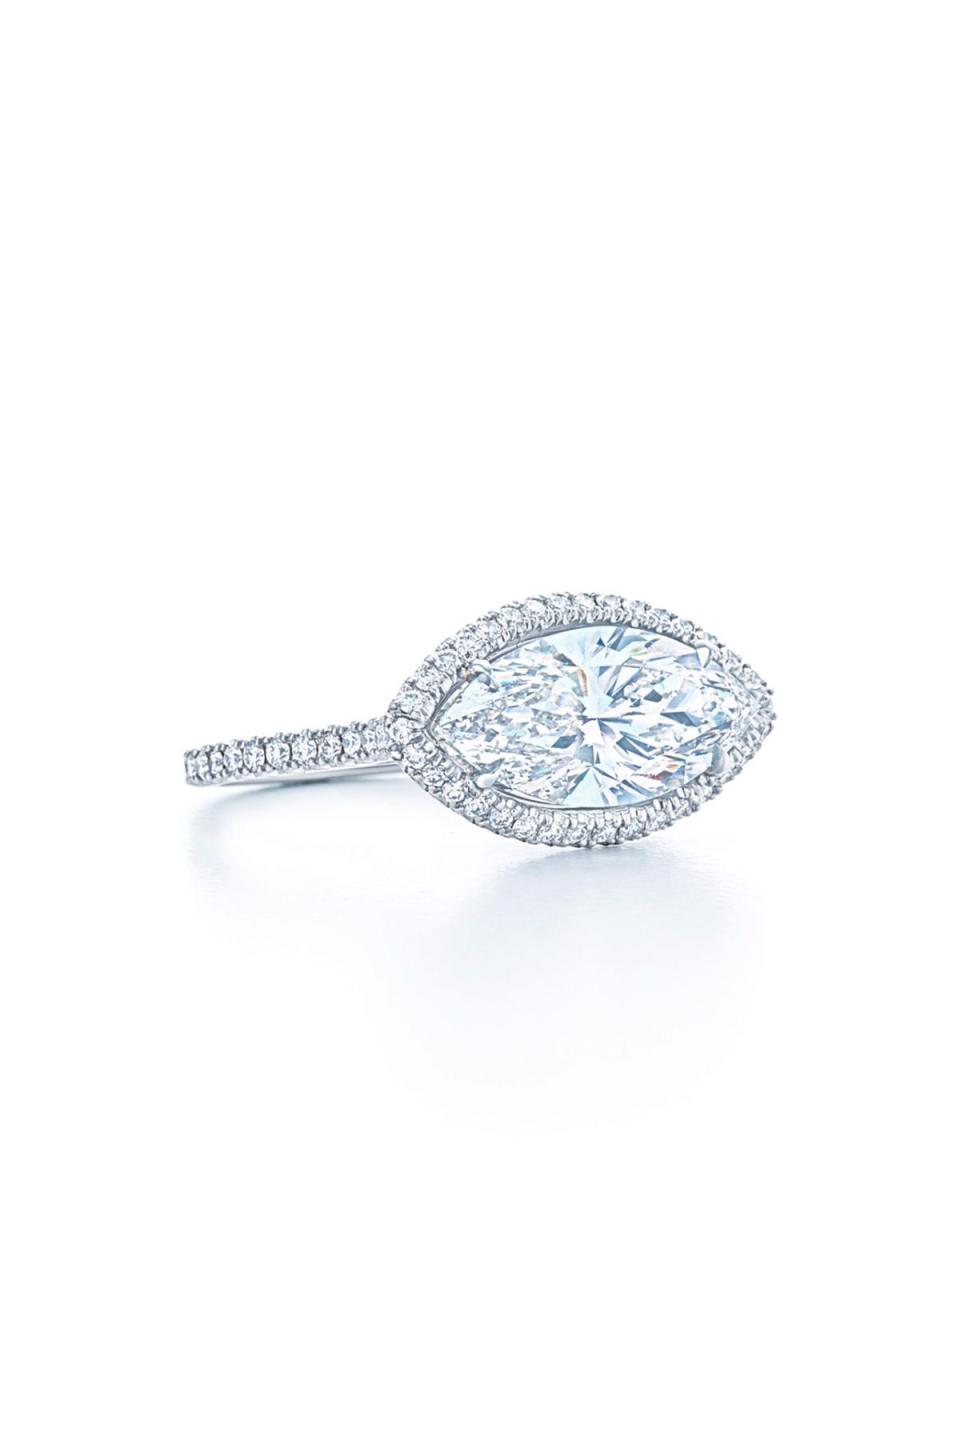 Platinum Marquise Diamond Ring with Diamond Halo